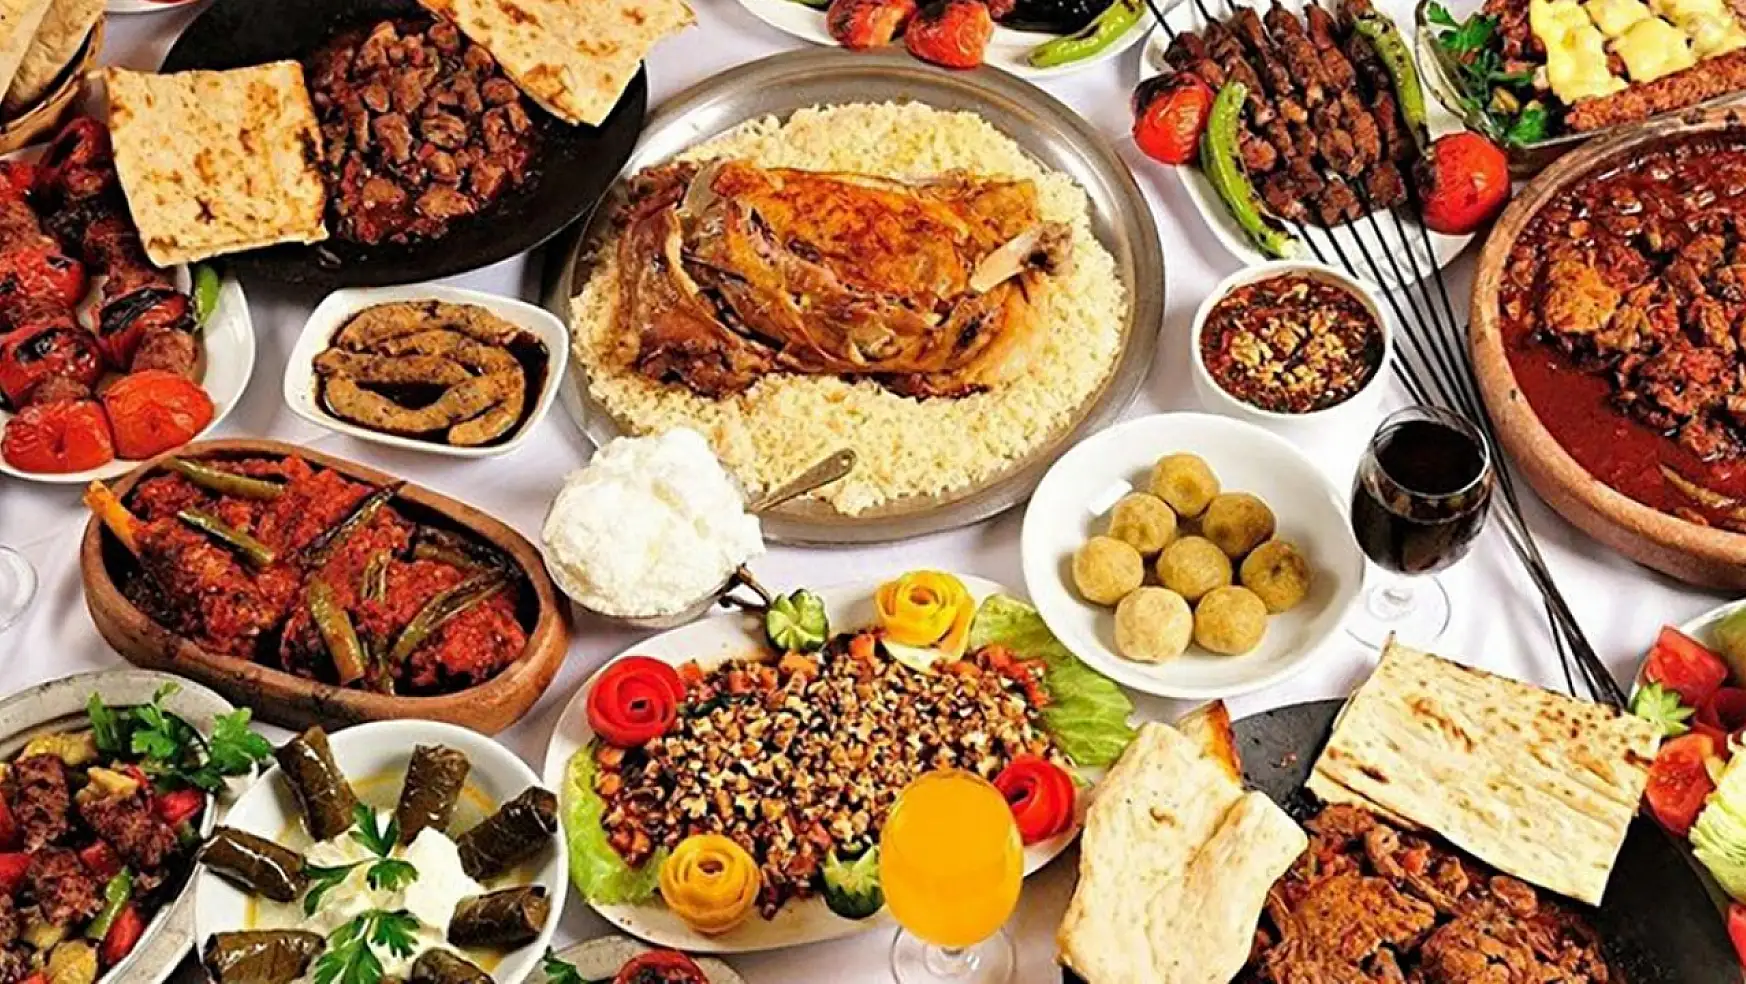 Ramazan Ayında En Çok Hangi Yemekler Tercih Edildi